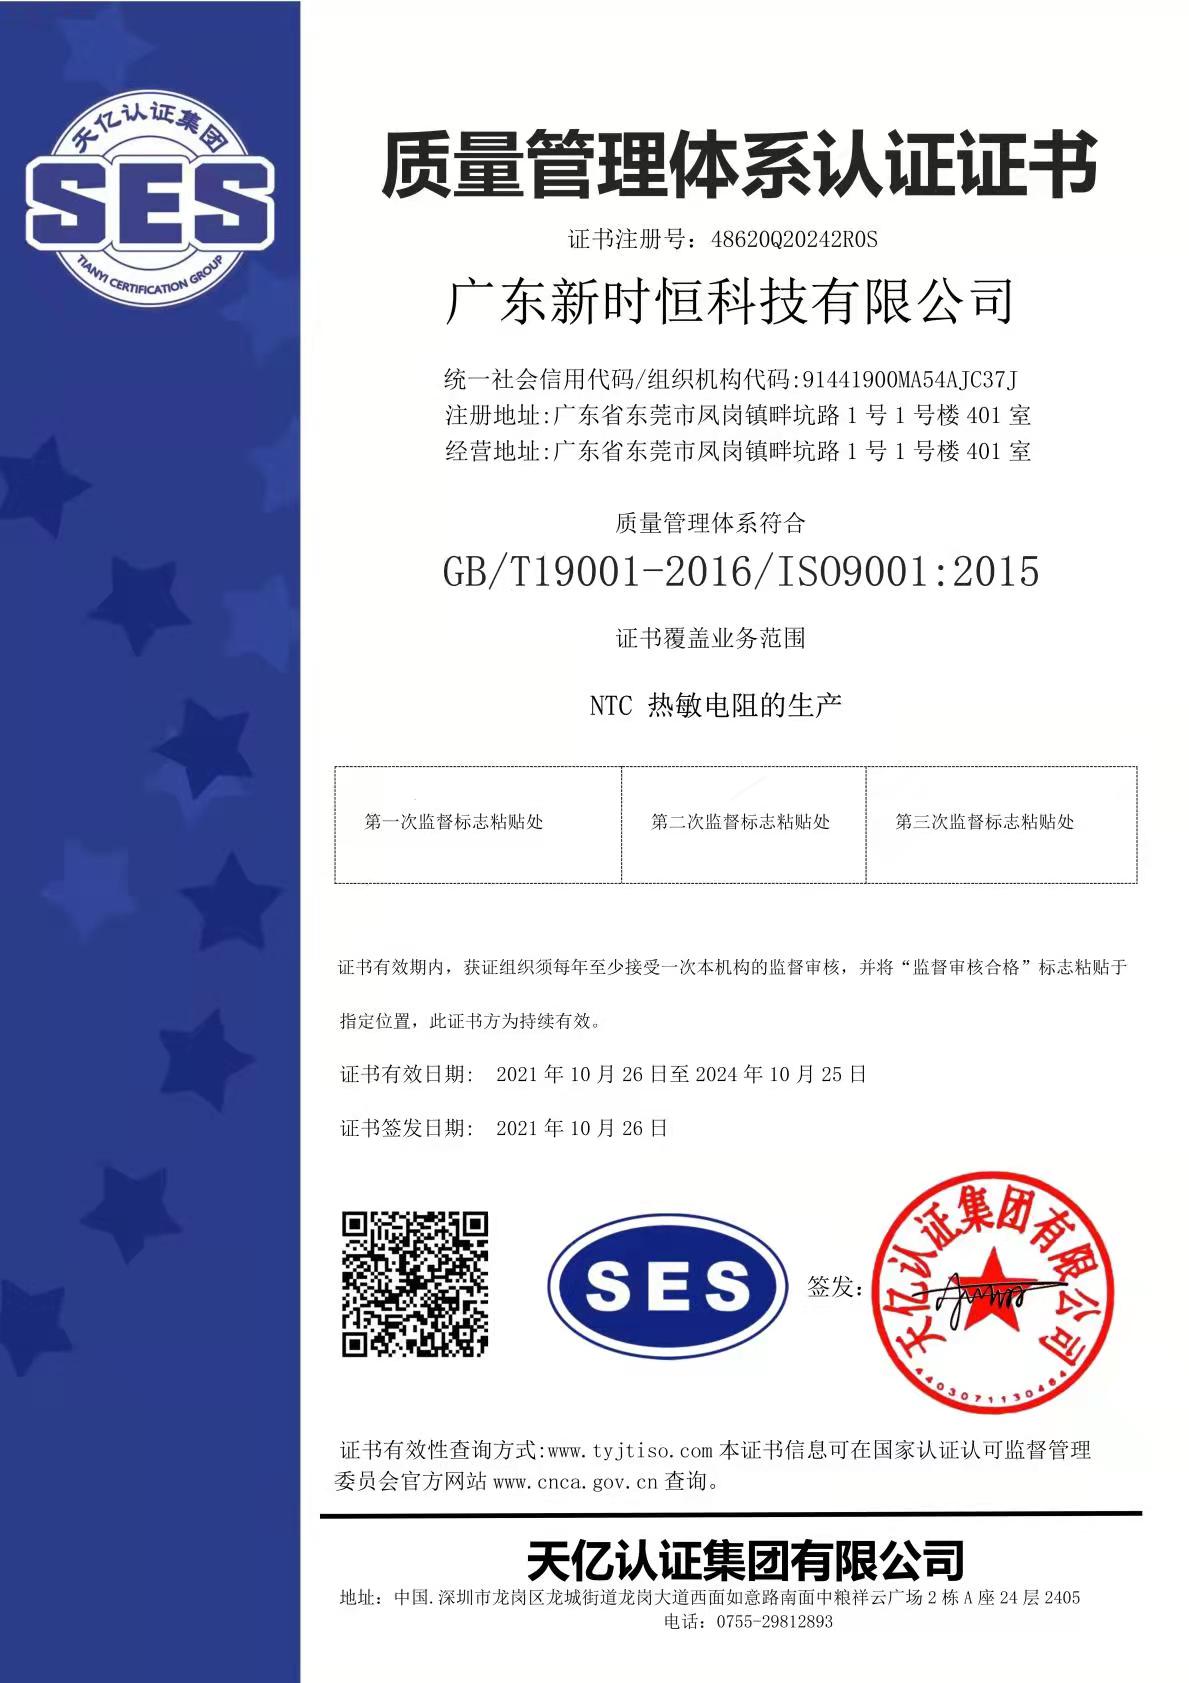 NTC温度传感器 ISO9001:2015证书